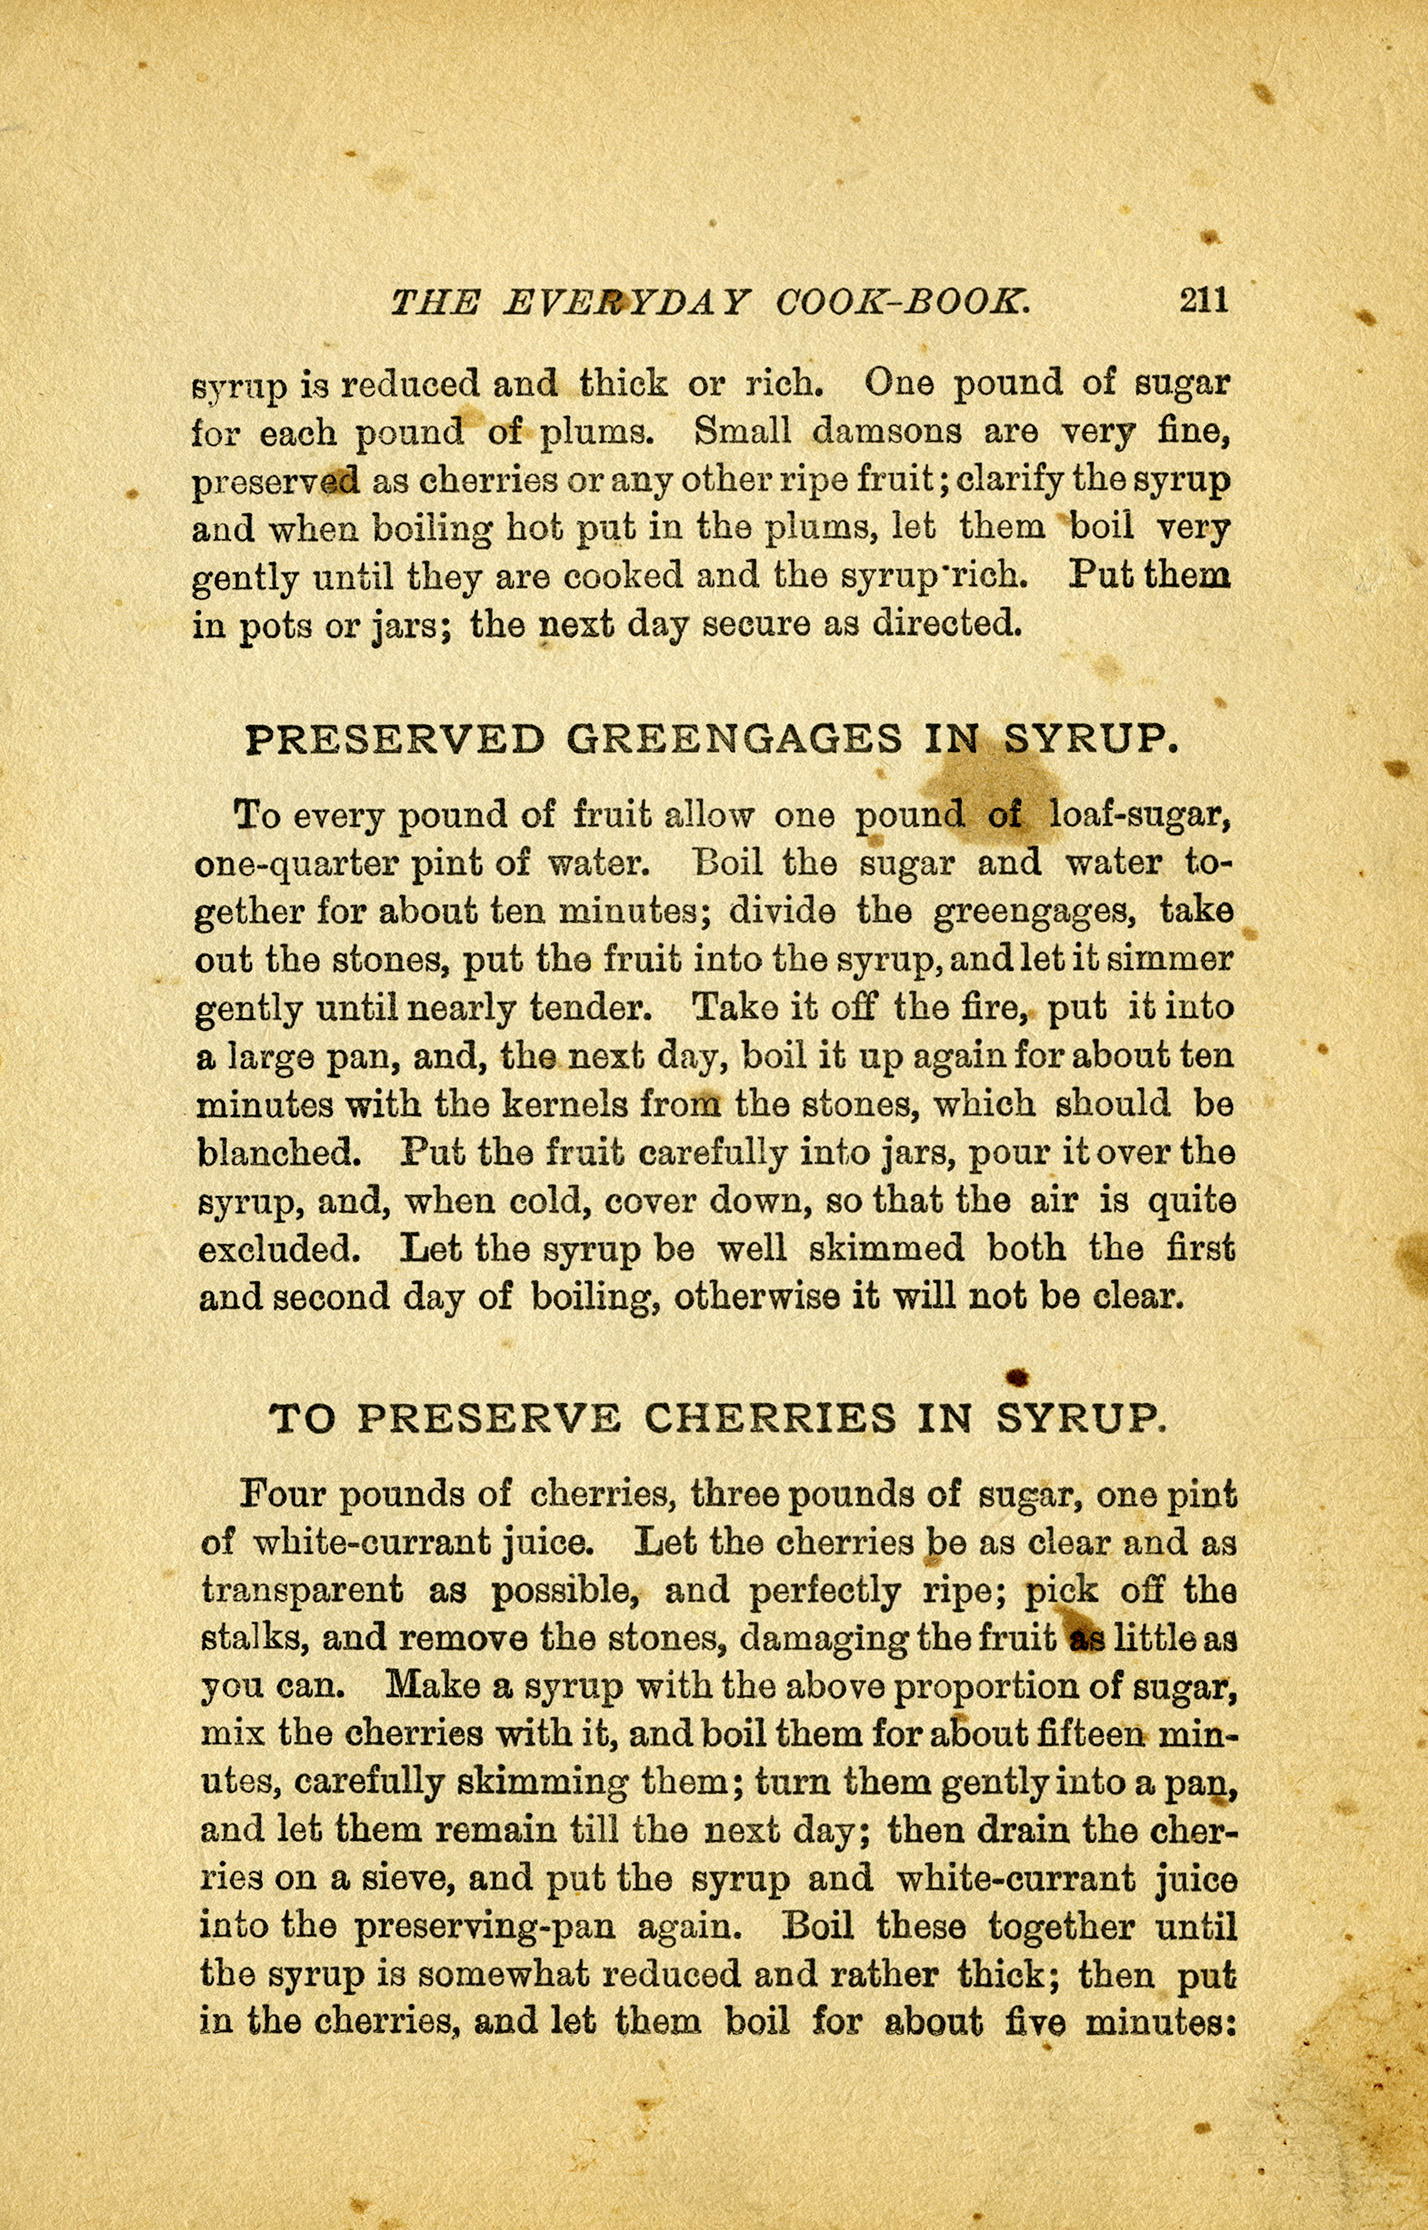 vintage preserves recipes cookbook page 